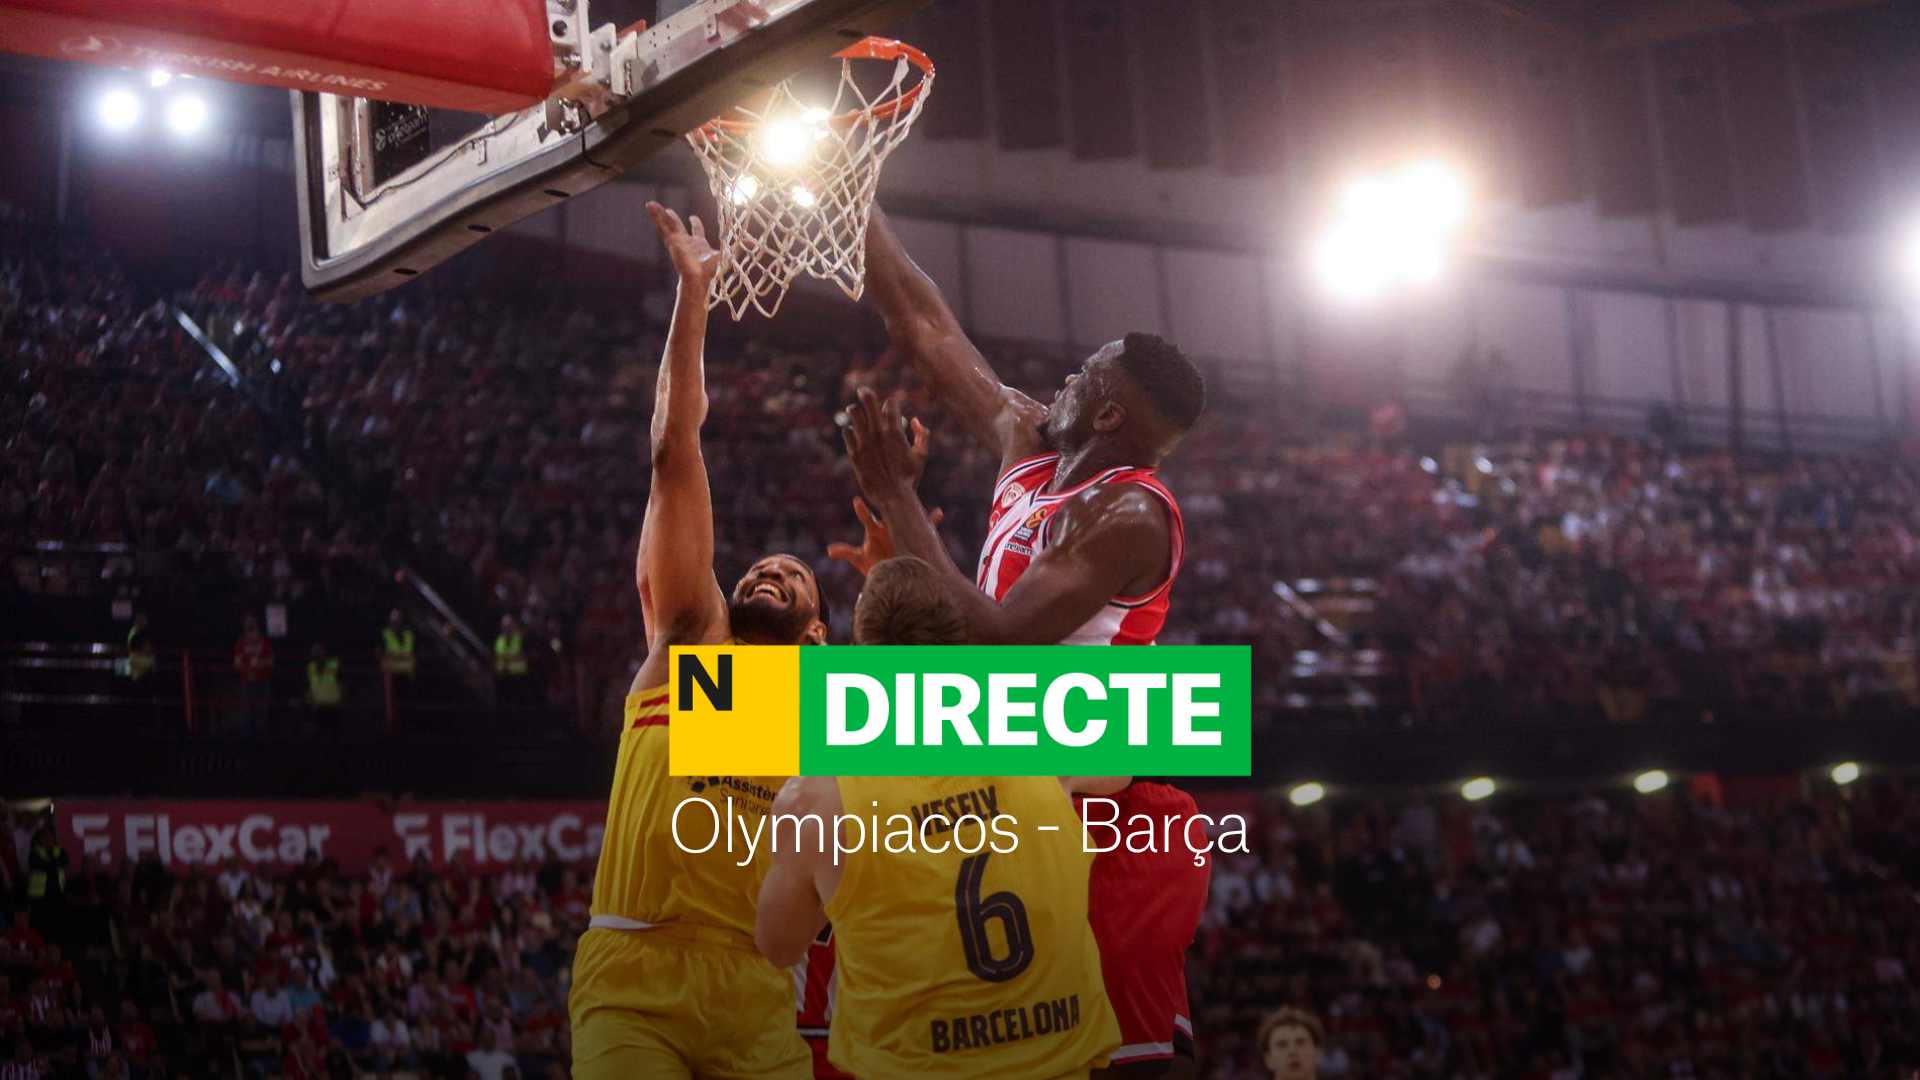 Olympiacos - Barça de la Euroliga de baloncesto, DIRECTO | Resultado y resumen